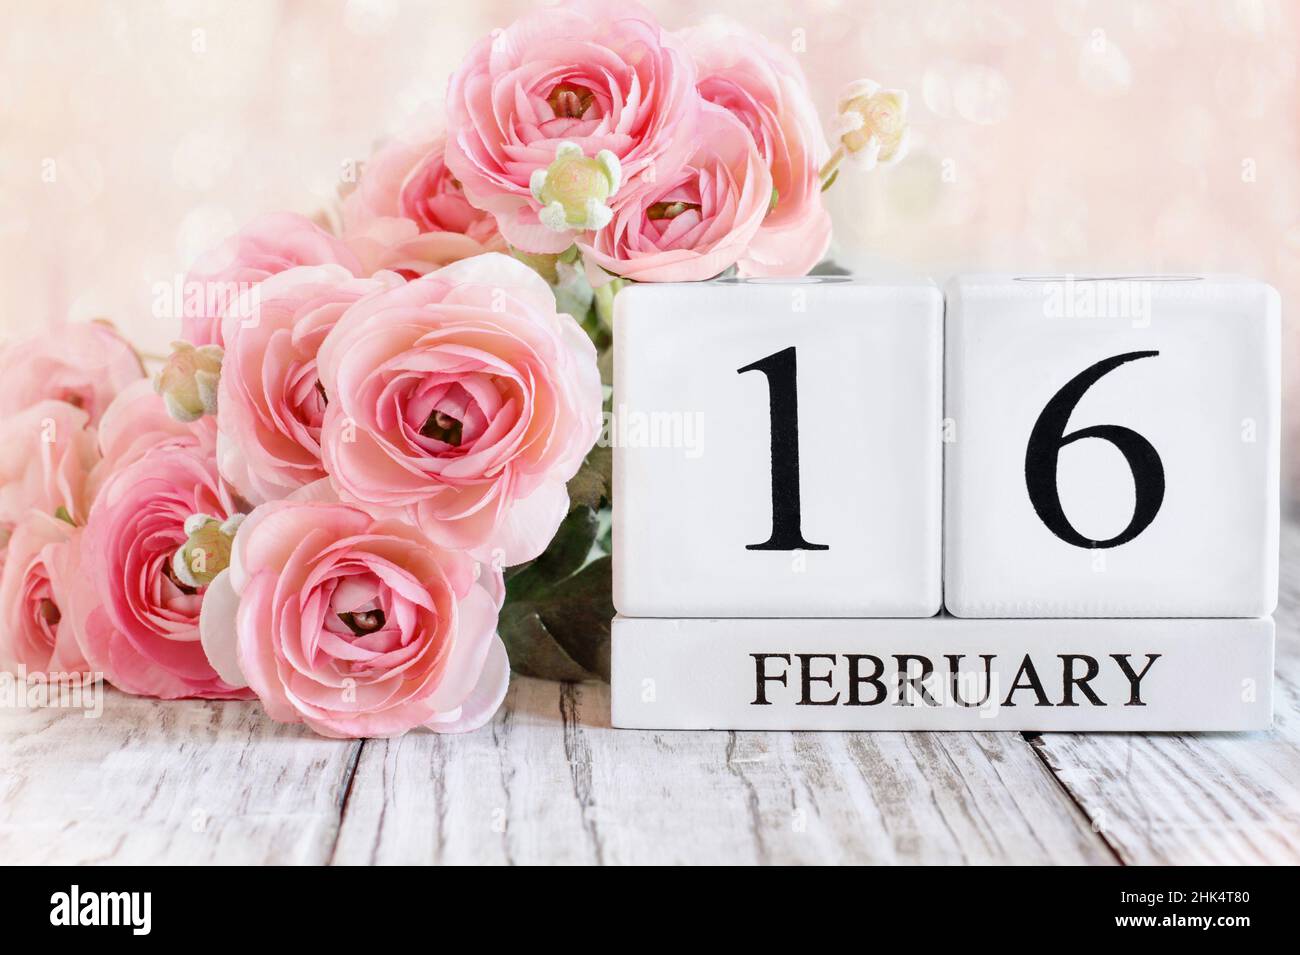 Blocs de calendrier en bois blanc avec la date du 16th février et le ranunculus rose fleurit sur une table en bois.Mise au point sélective avec arrière-plan flou. Banque D'Images